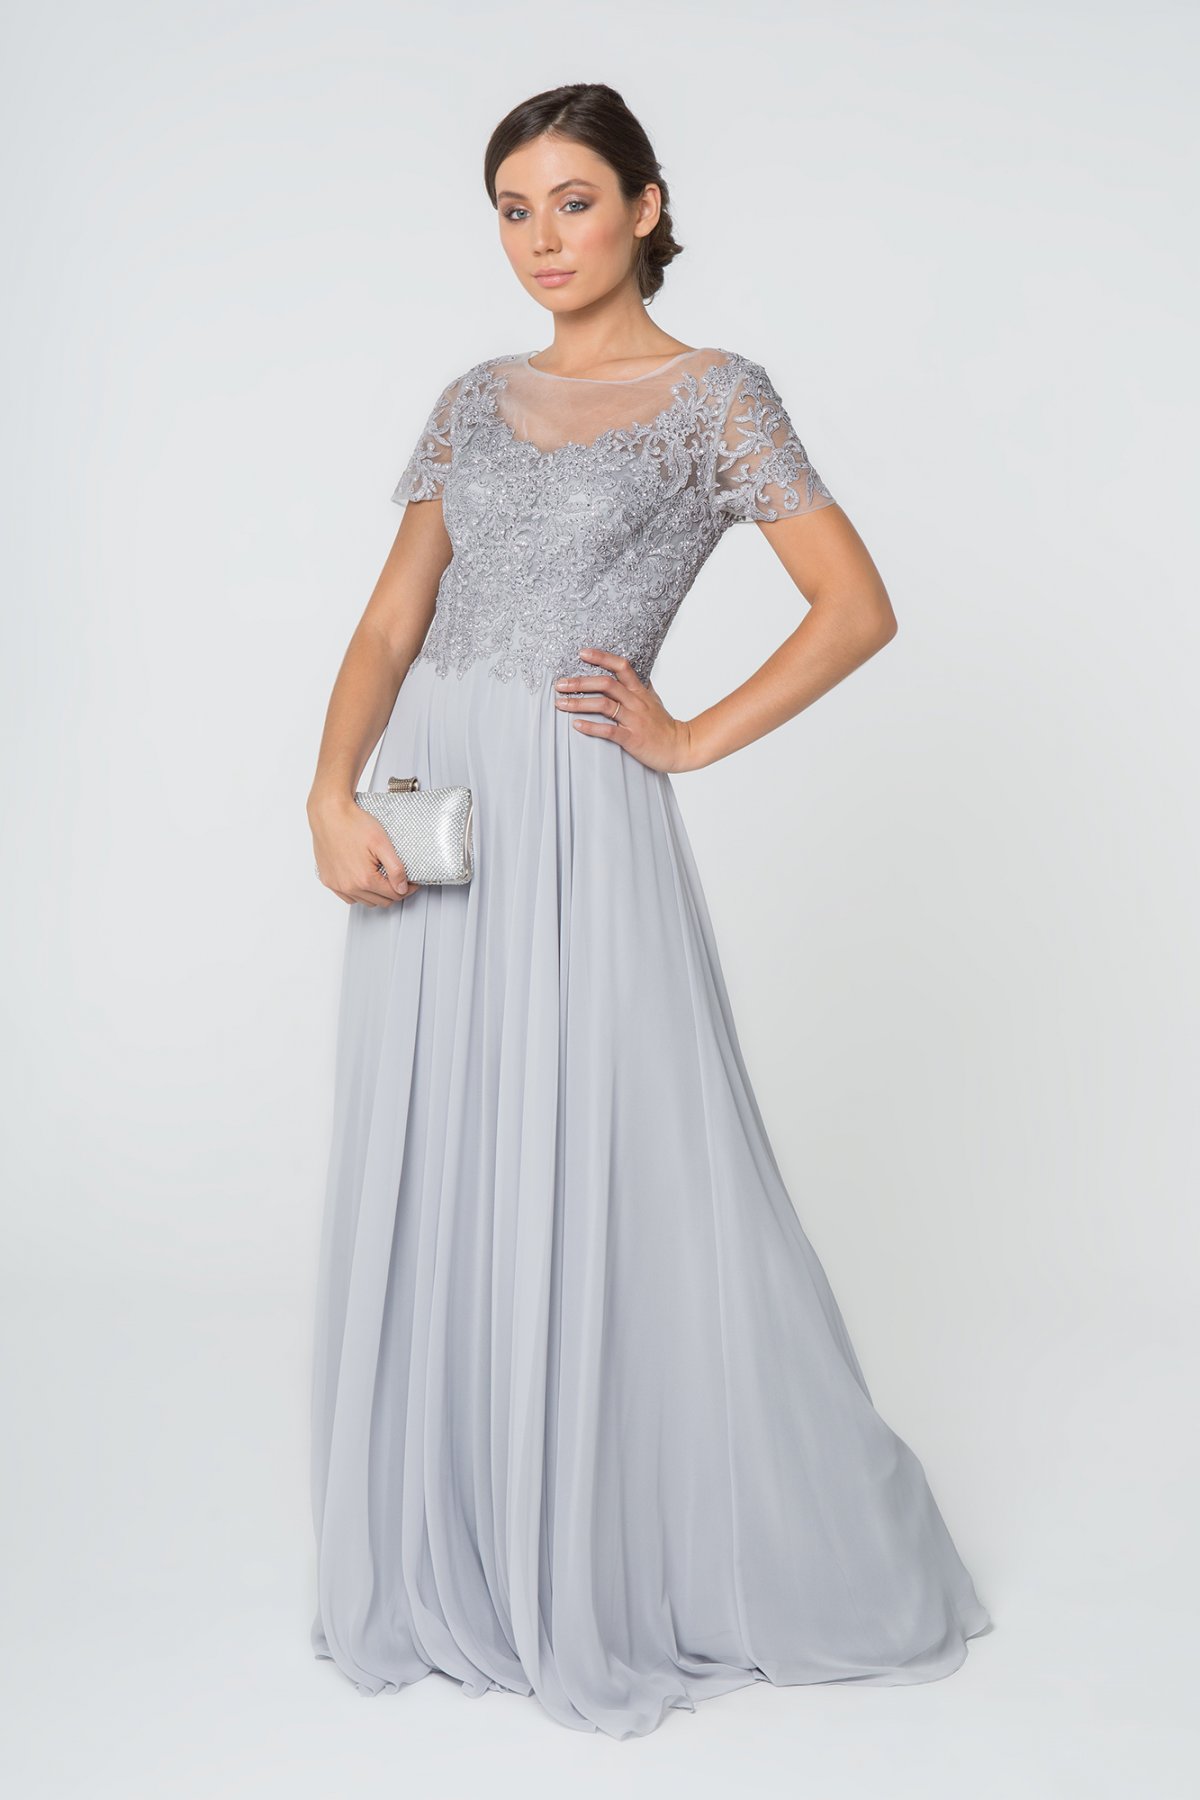 Sølvbryllupskjole | Køb kjole til sølvbryllup eller i